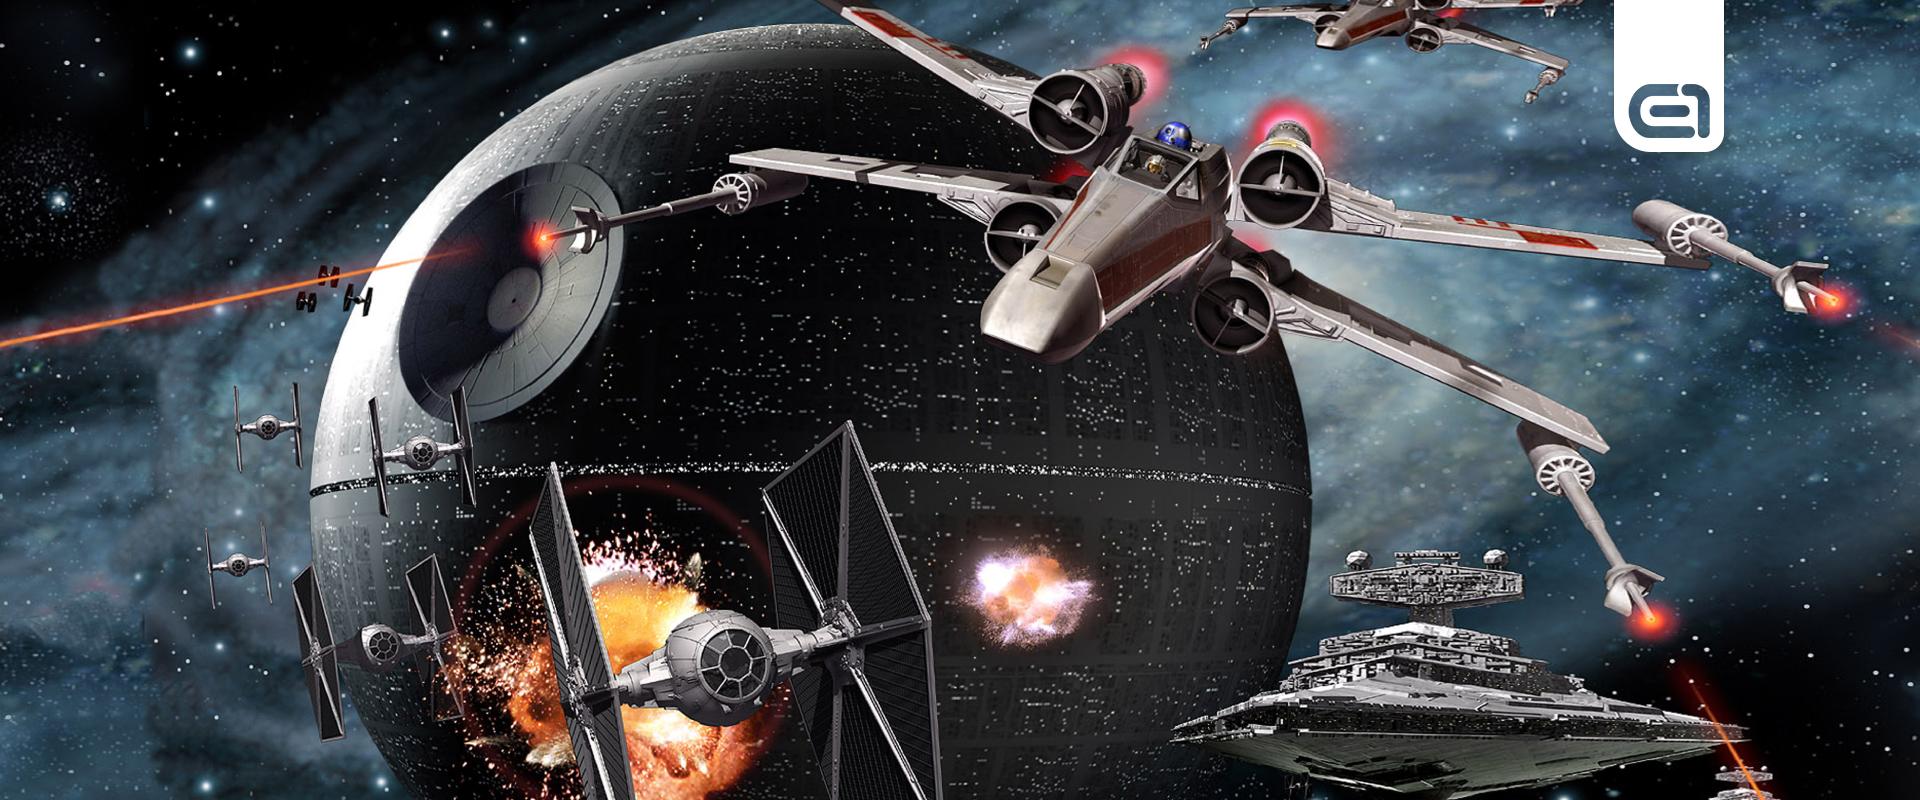 Mit gondolsz? Melyik a legnagyobb hajó a Star Wars-filmekből?